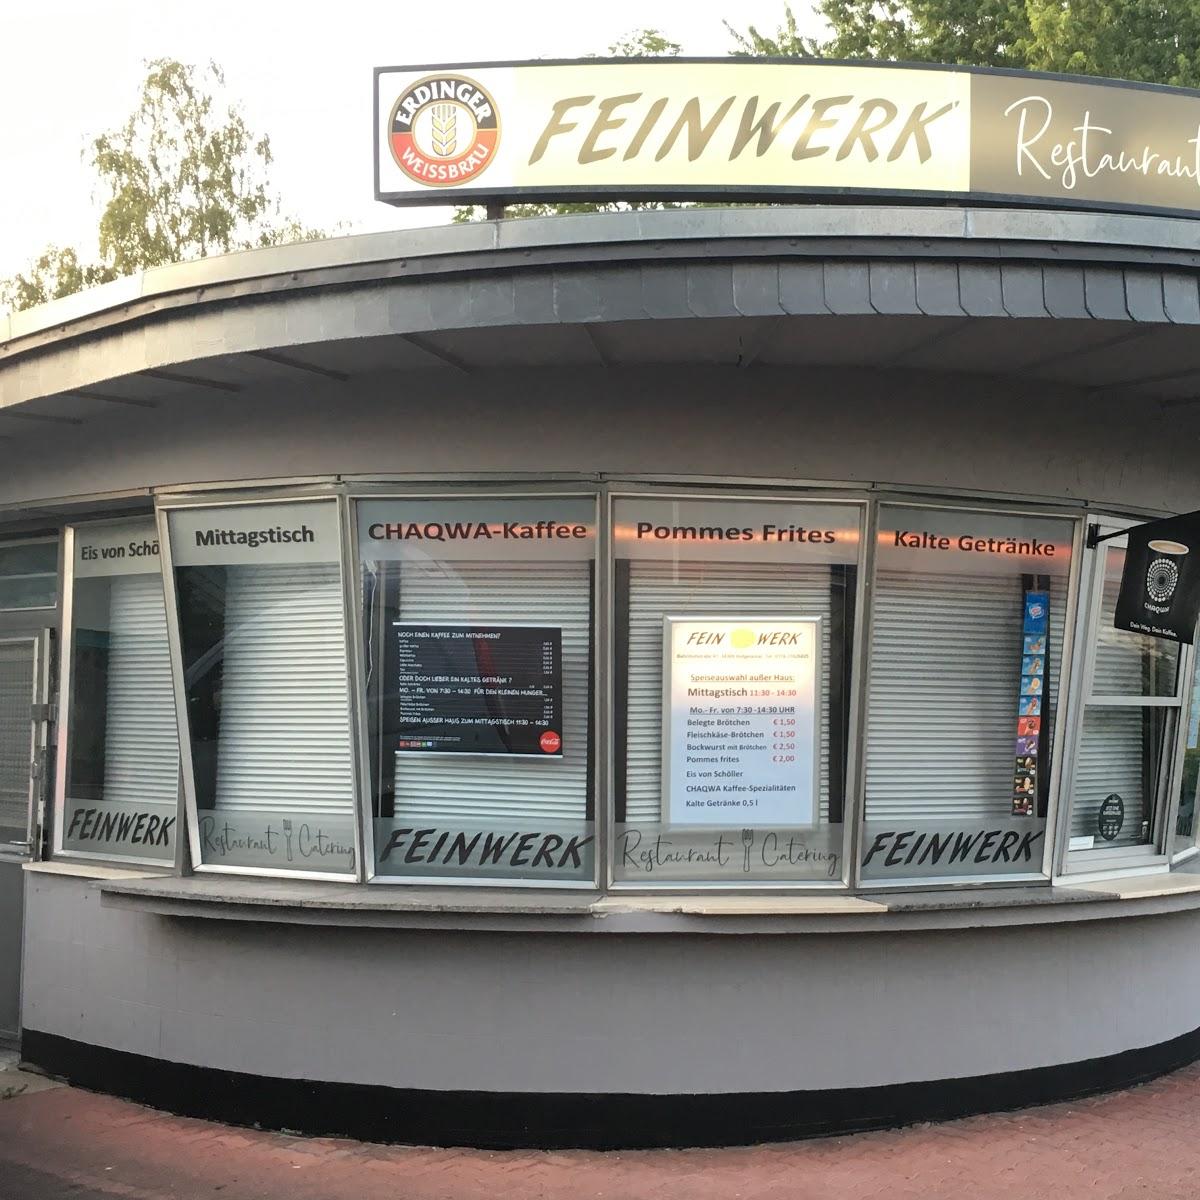 Restaurant "Feinwerk Restaurant UG" in  Hofgeismar